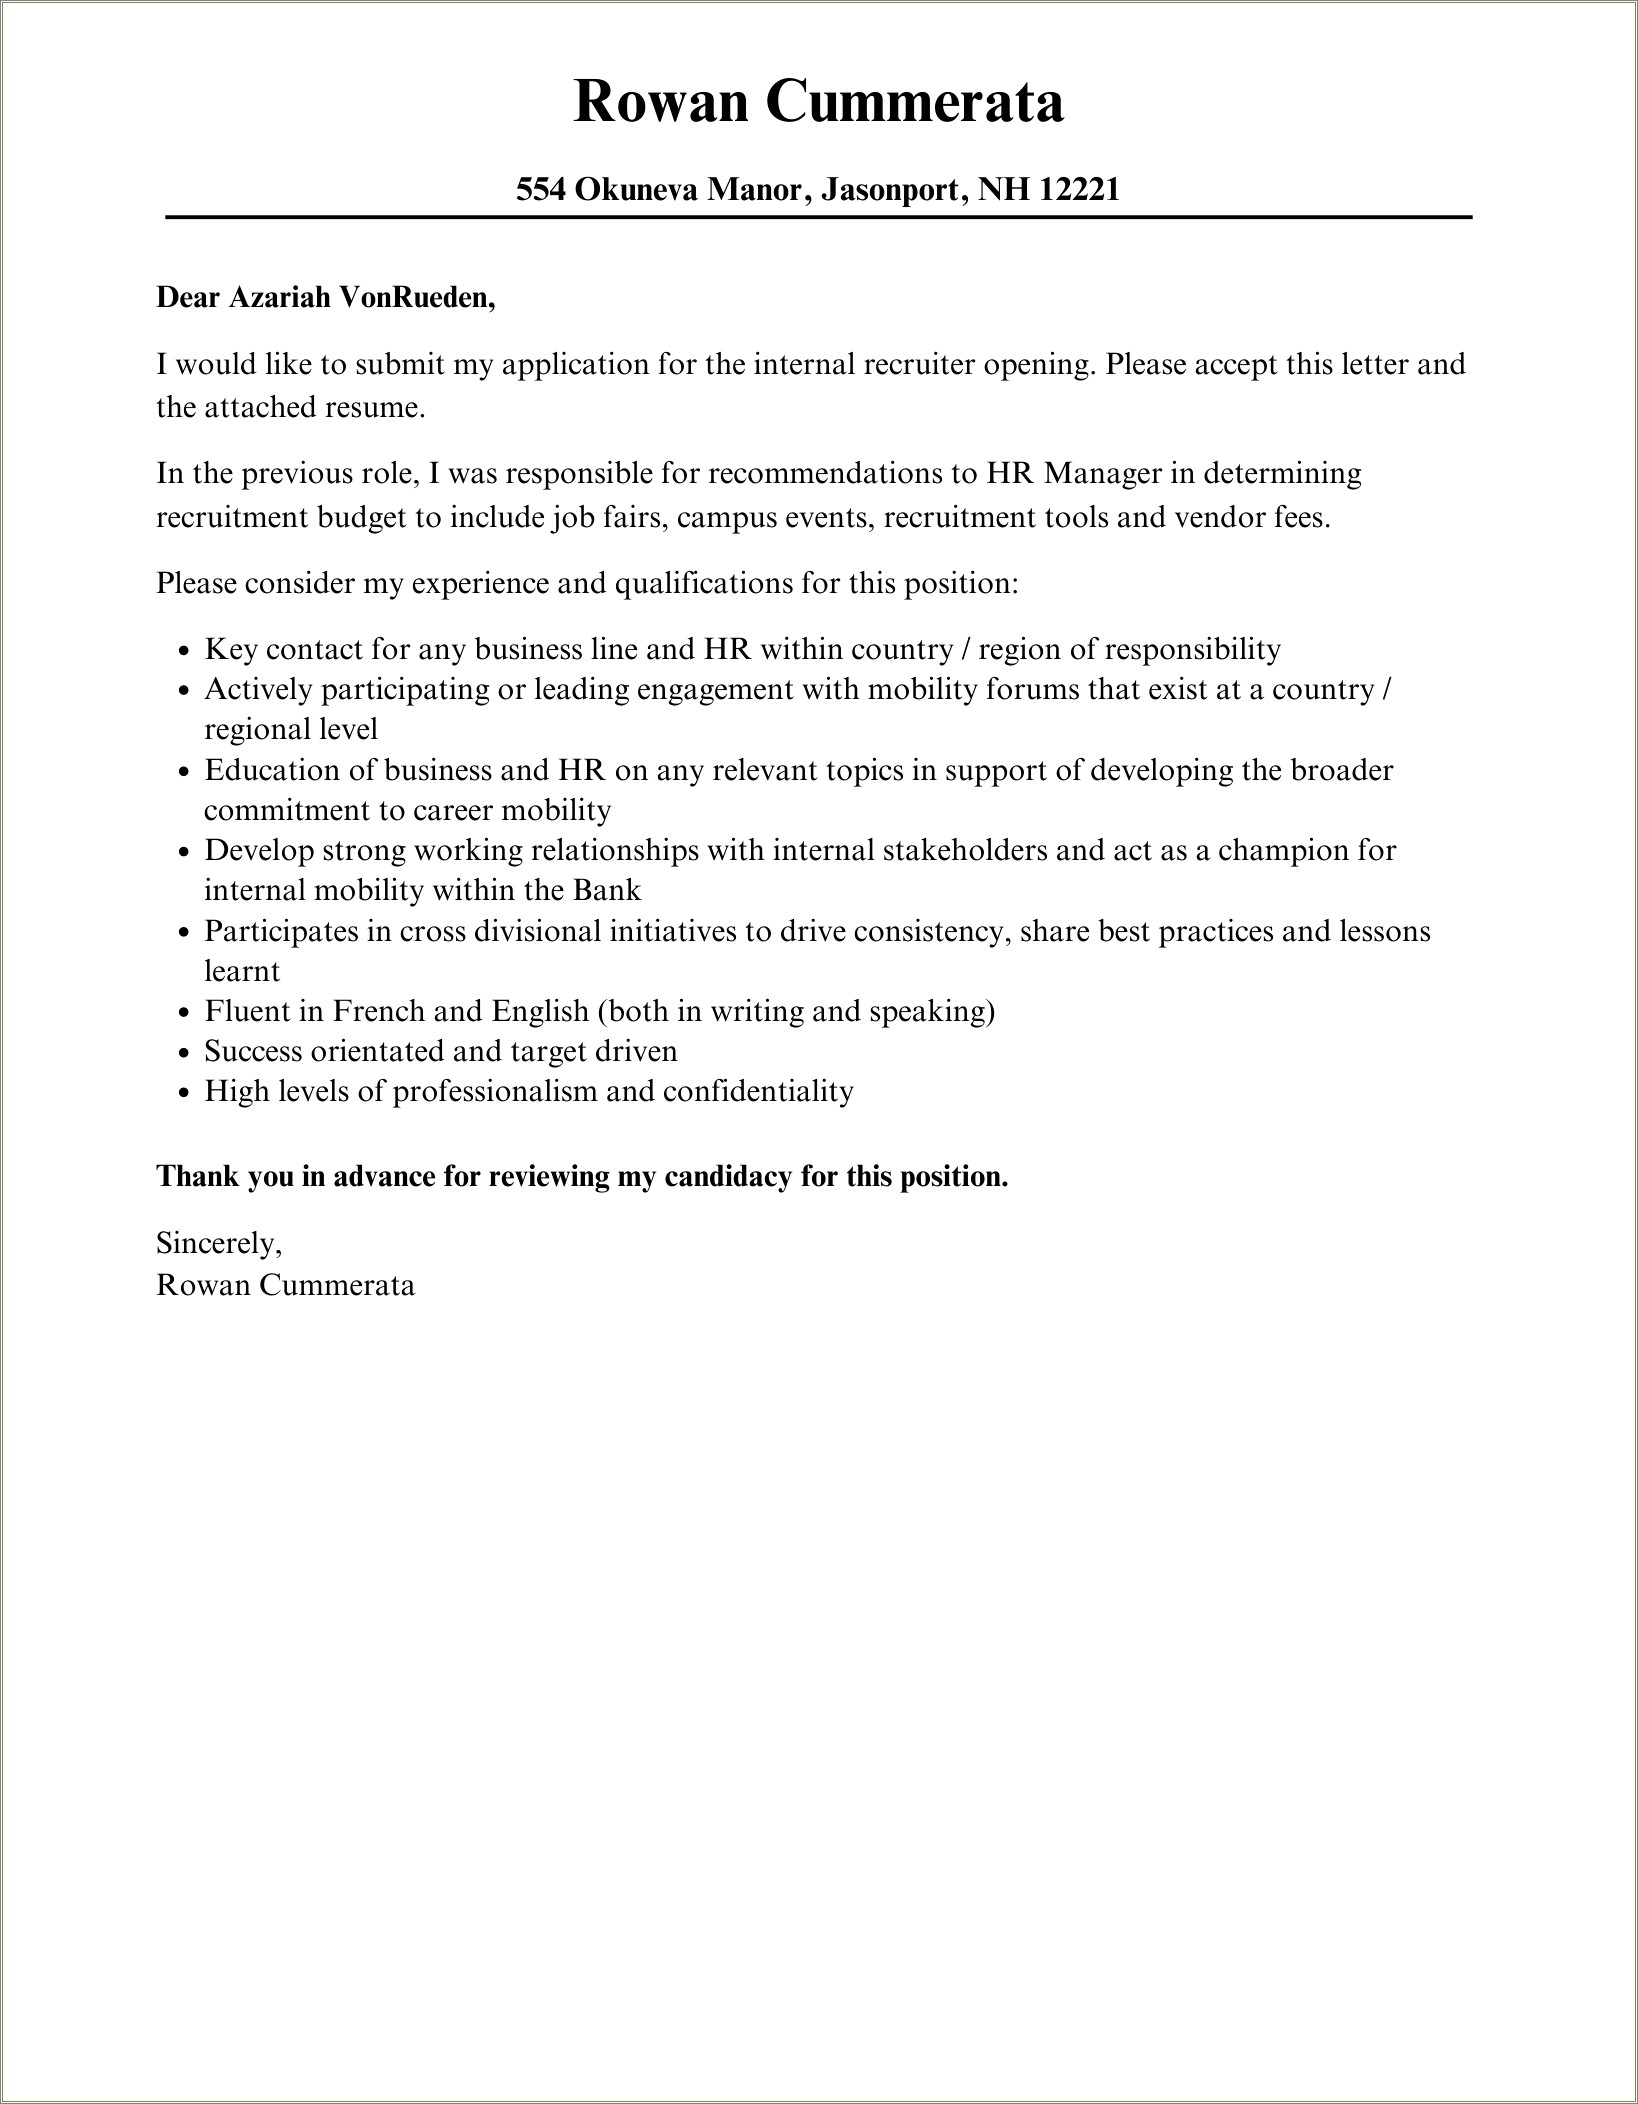 Resume Cover Letter For Recruiter Position